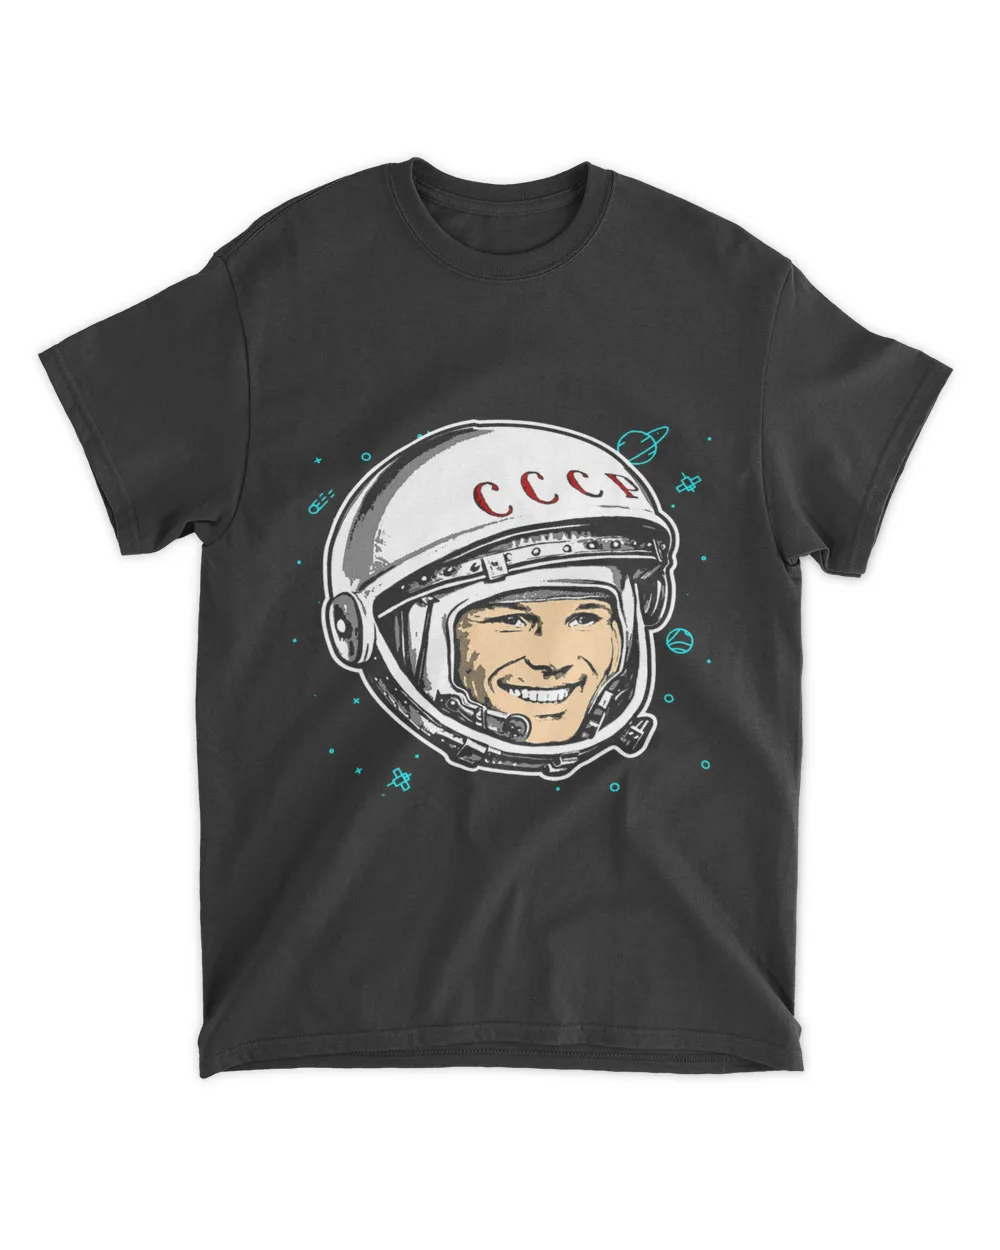 Yuri Gagarin Cosmonaut Space Soviet Union USSR Russia Gift